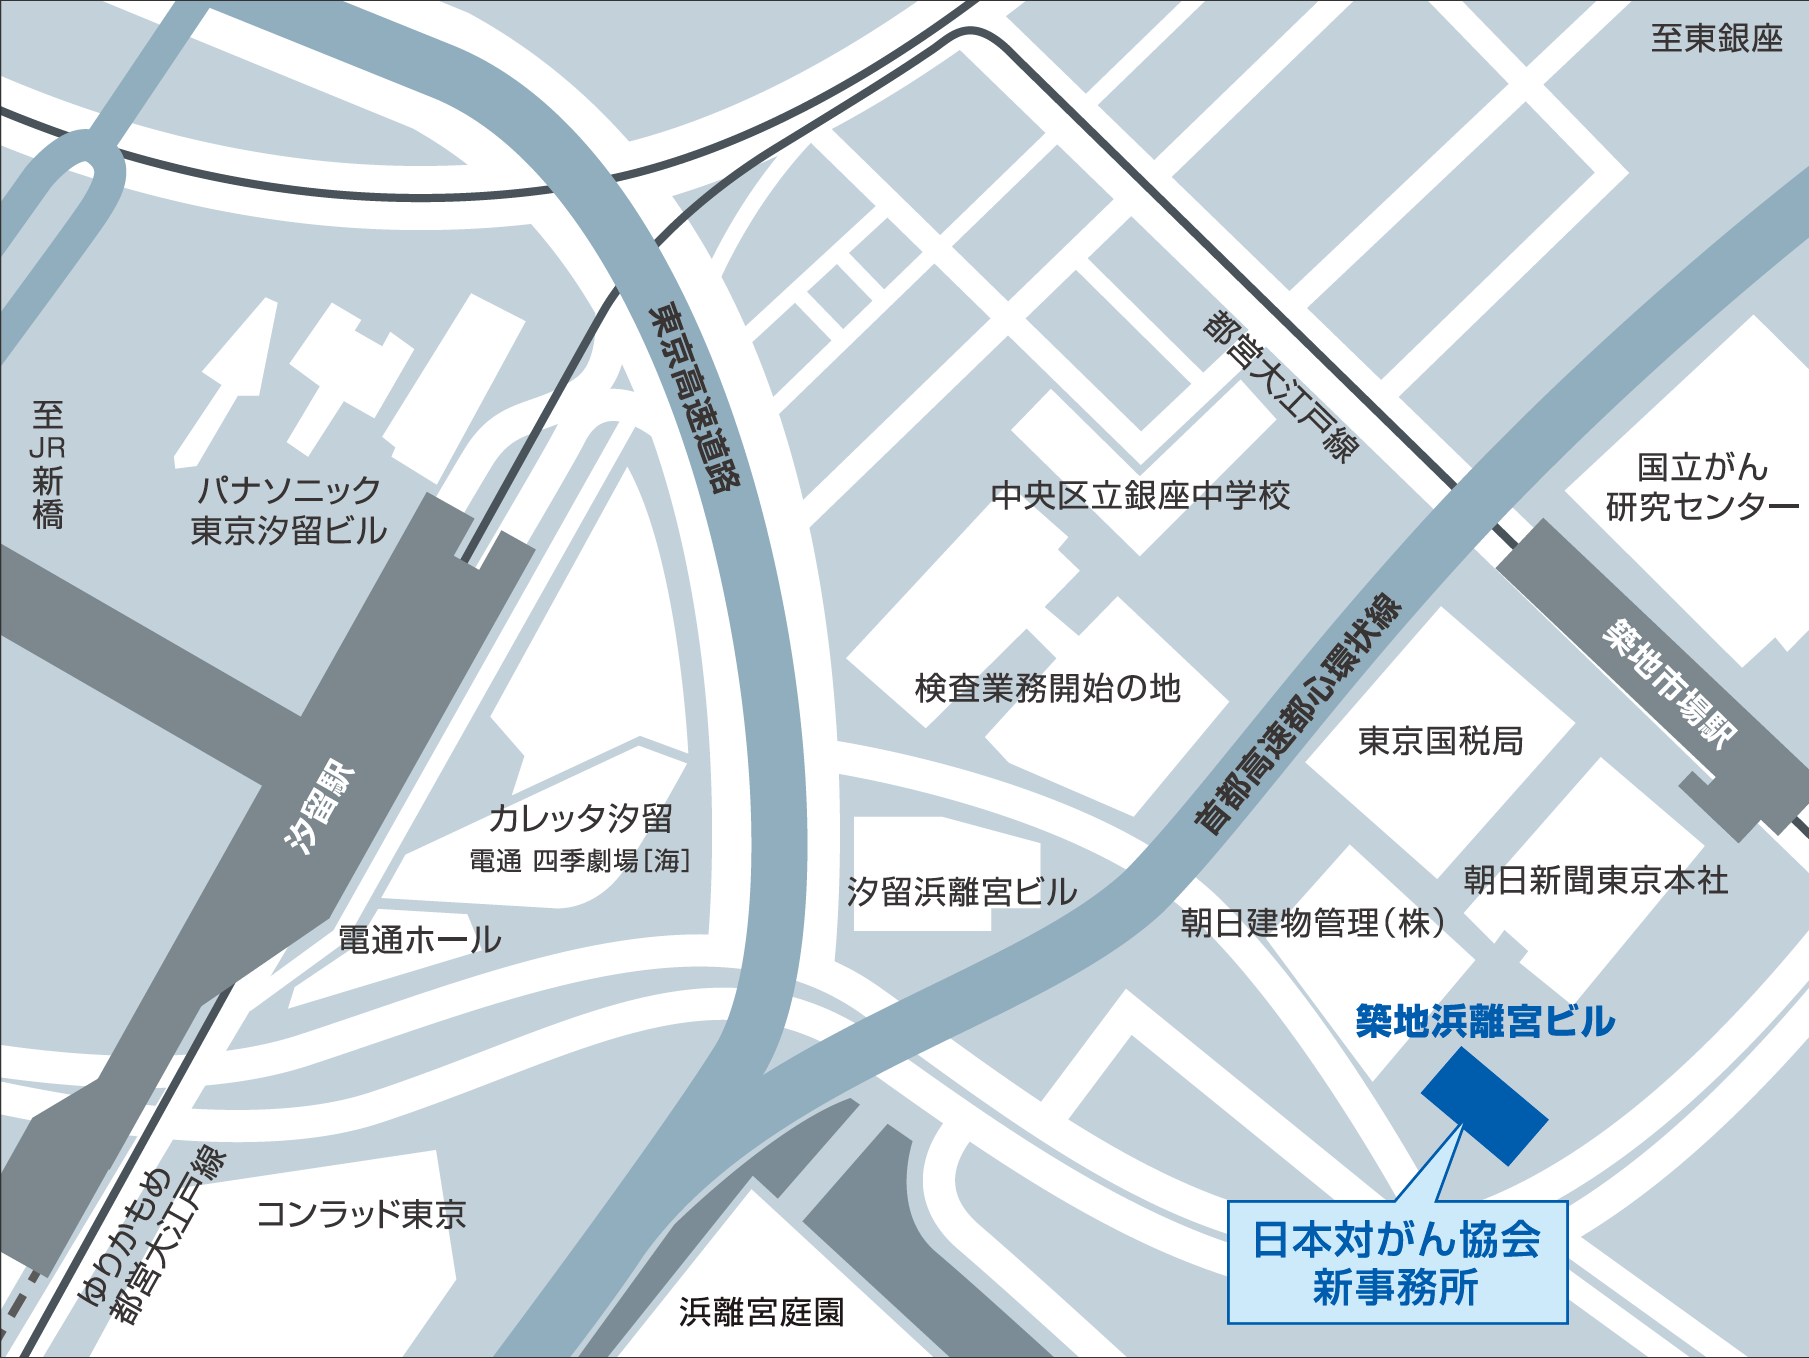 財団法人日本対がん協会案内地図